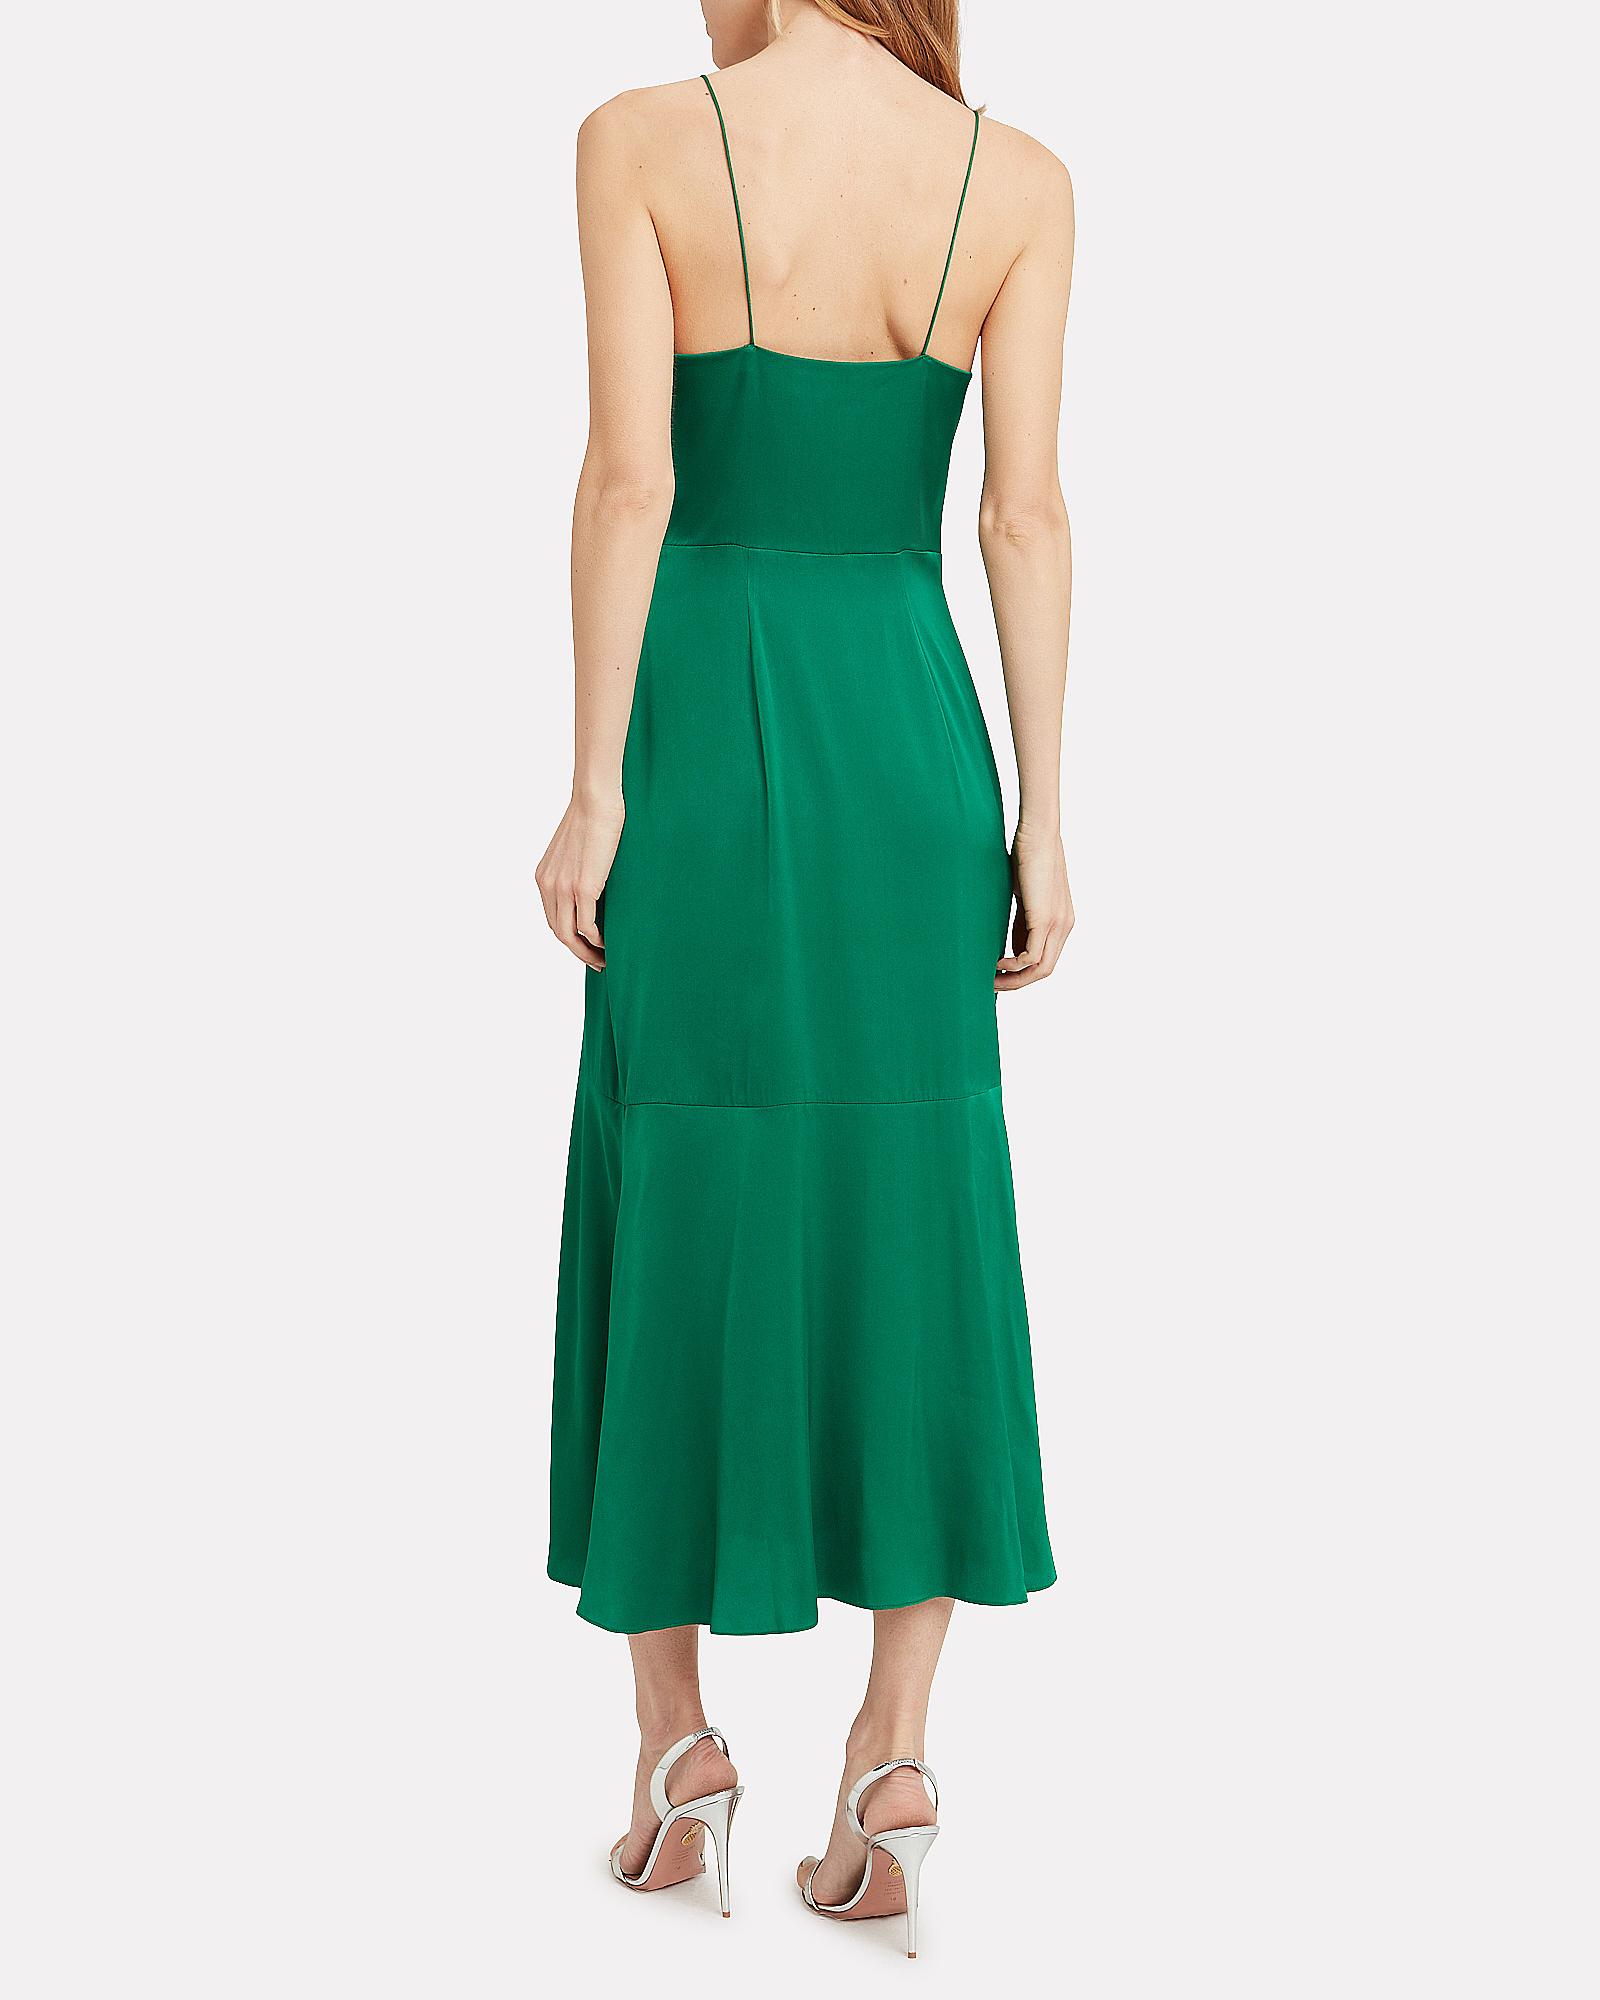 intermix green dress